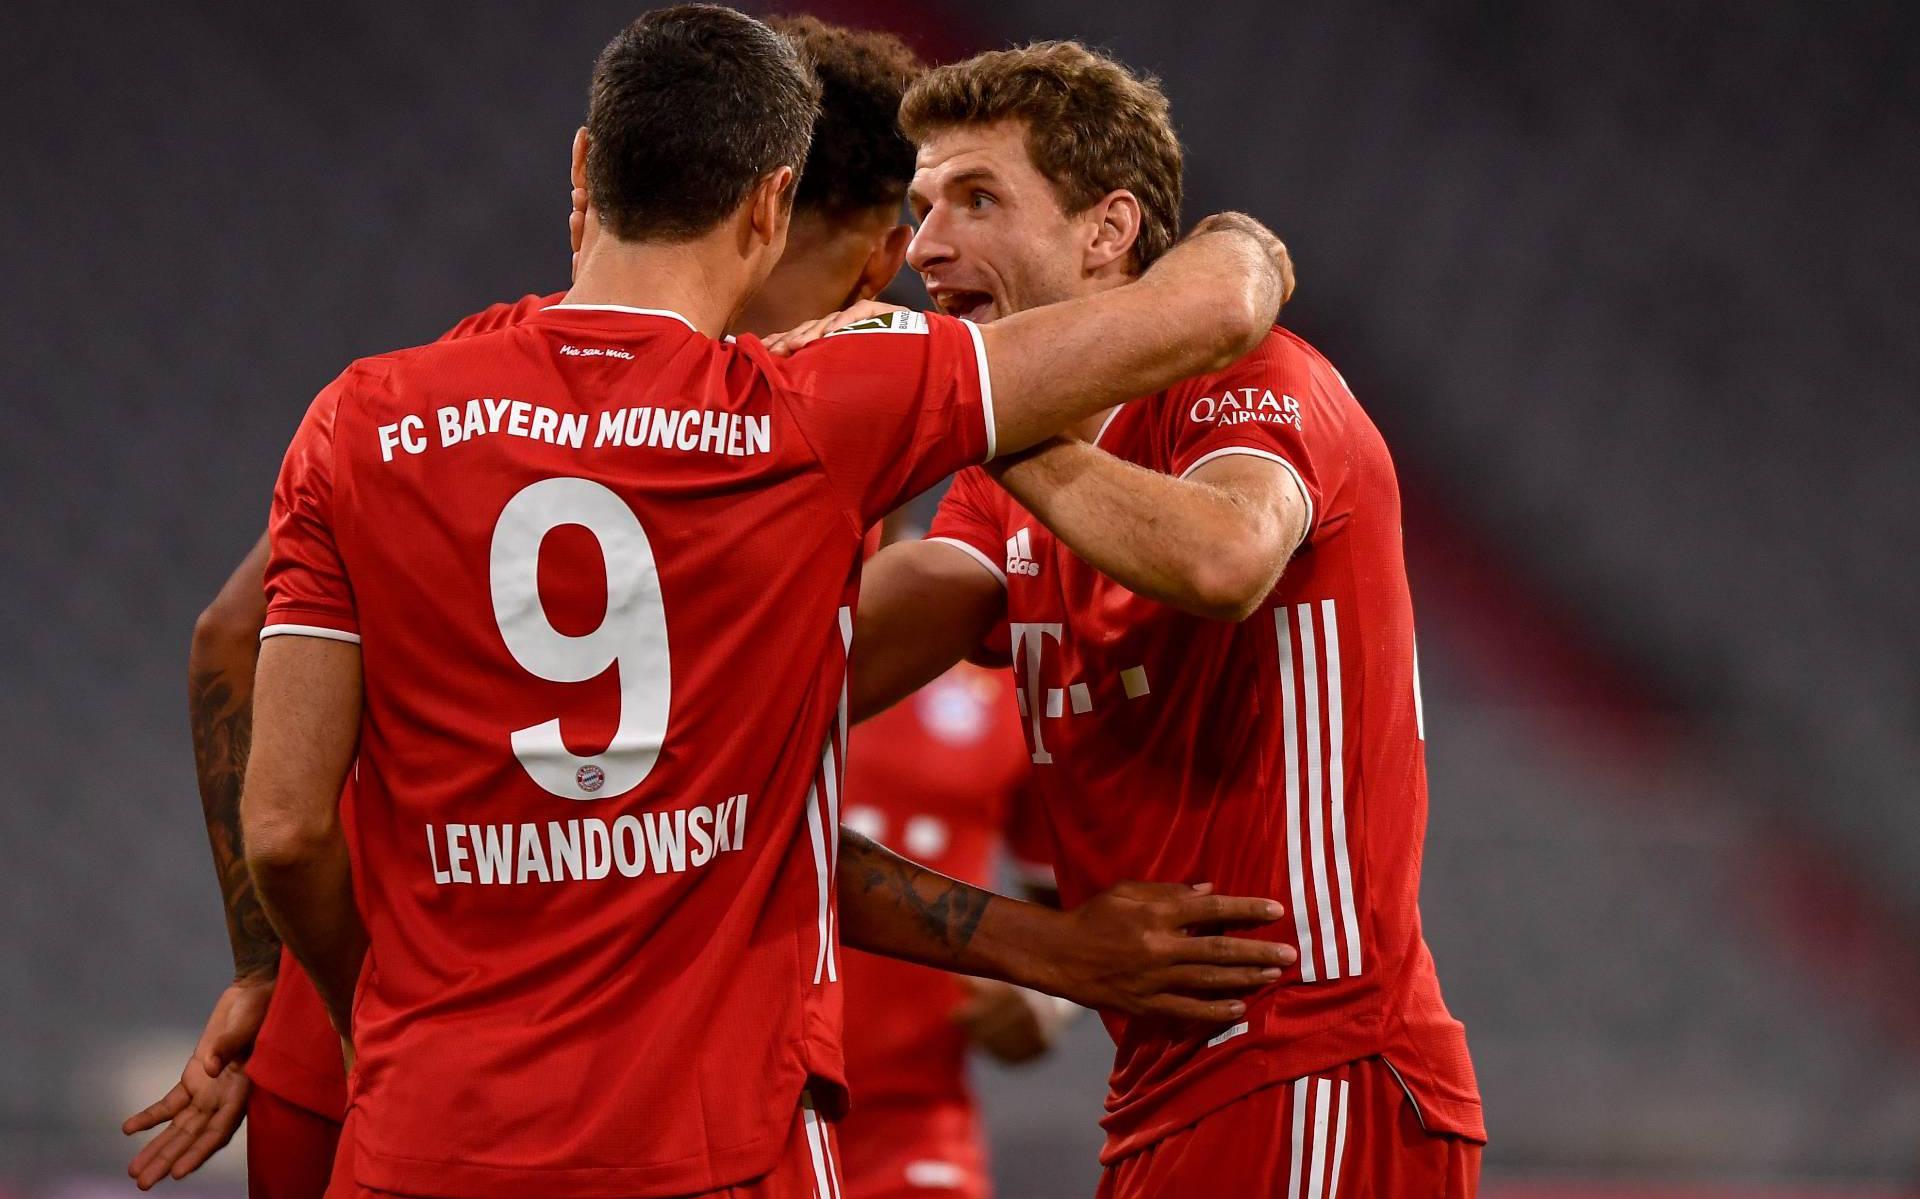 Lewandowski leidt Bayern met vier doelpunten langs Hertha